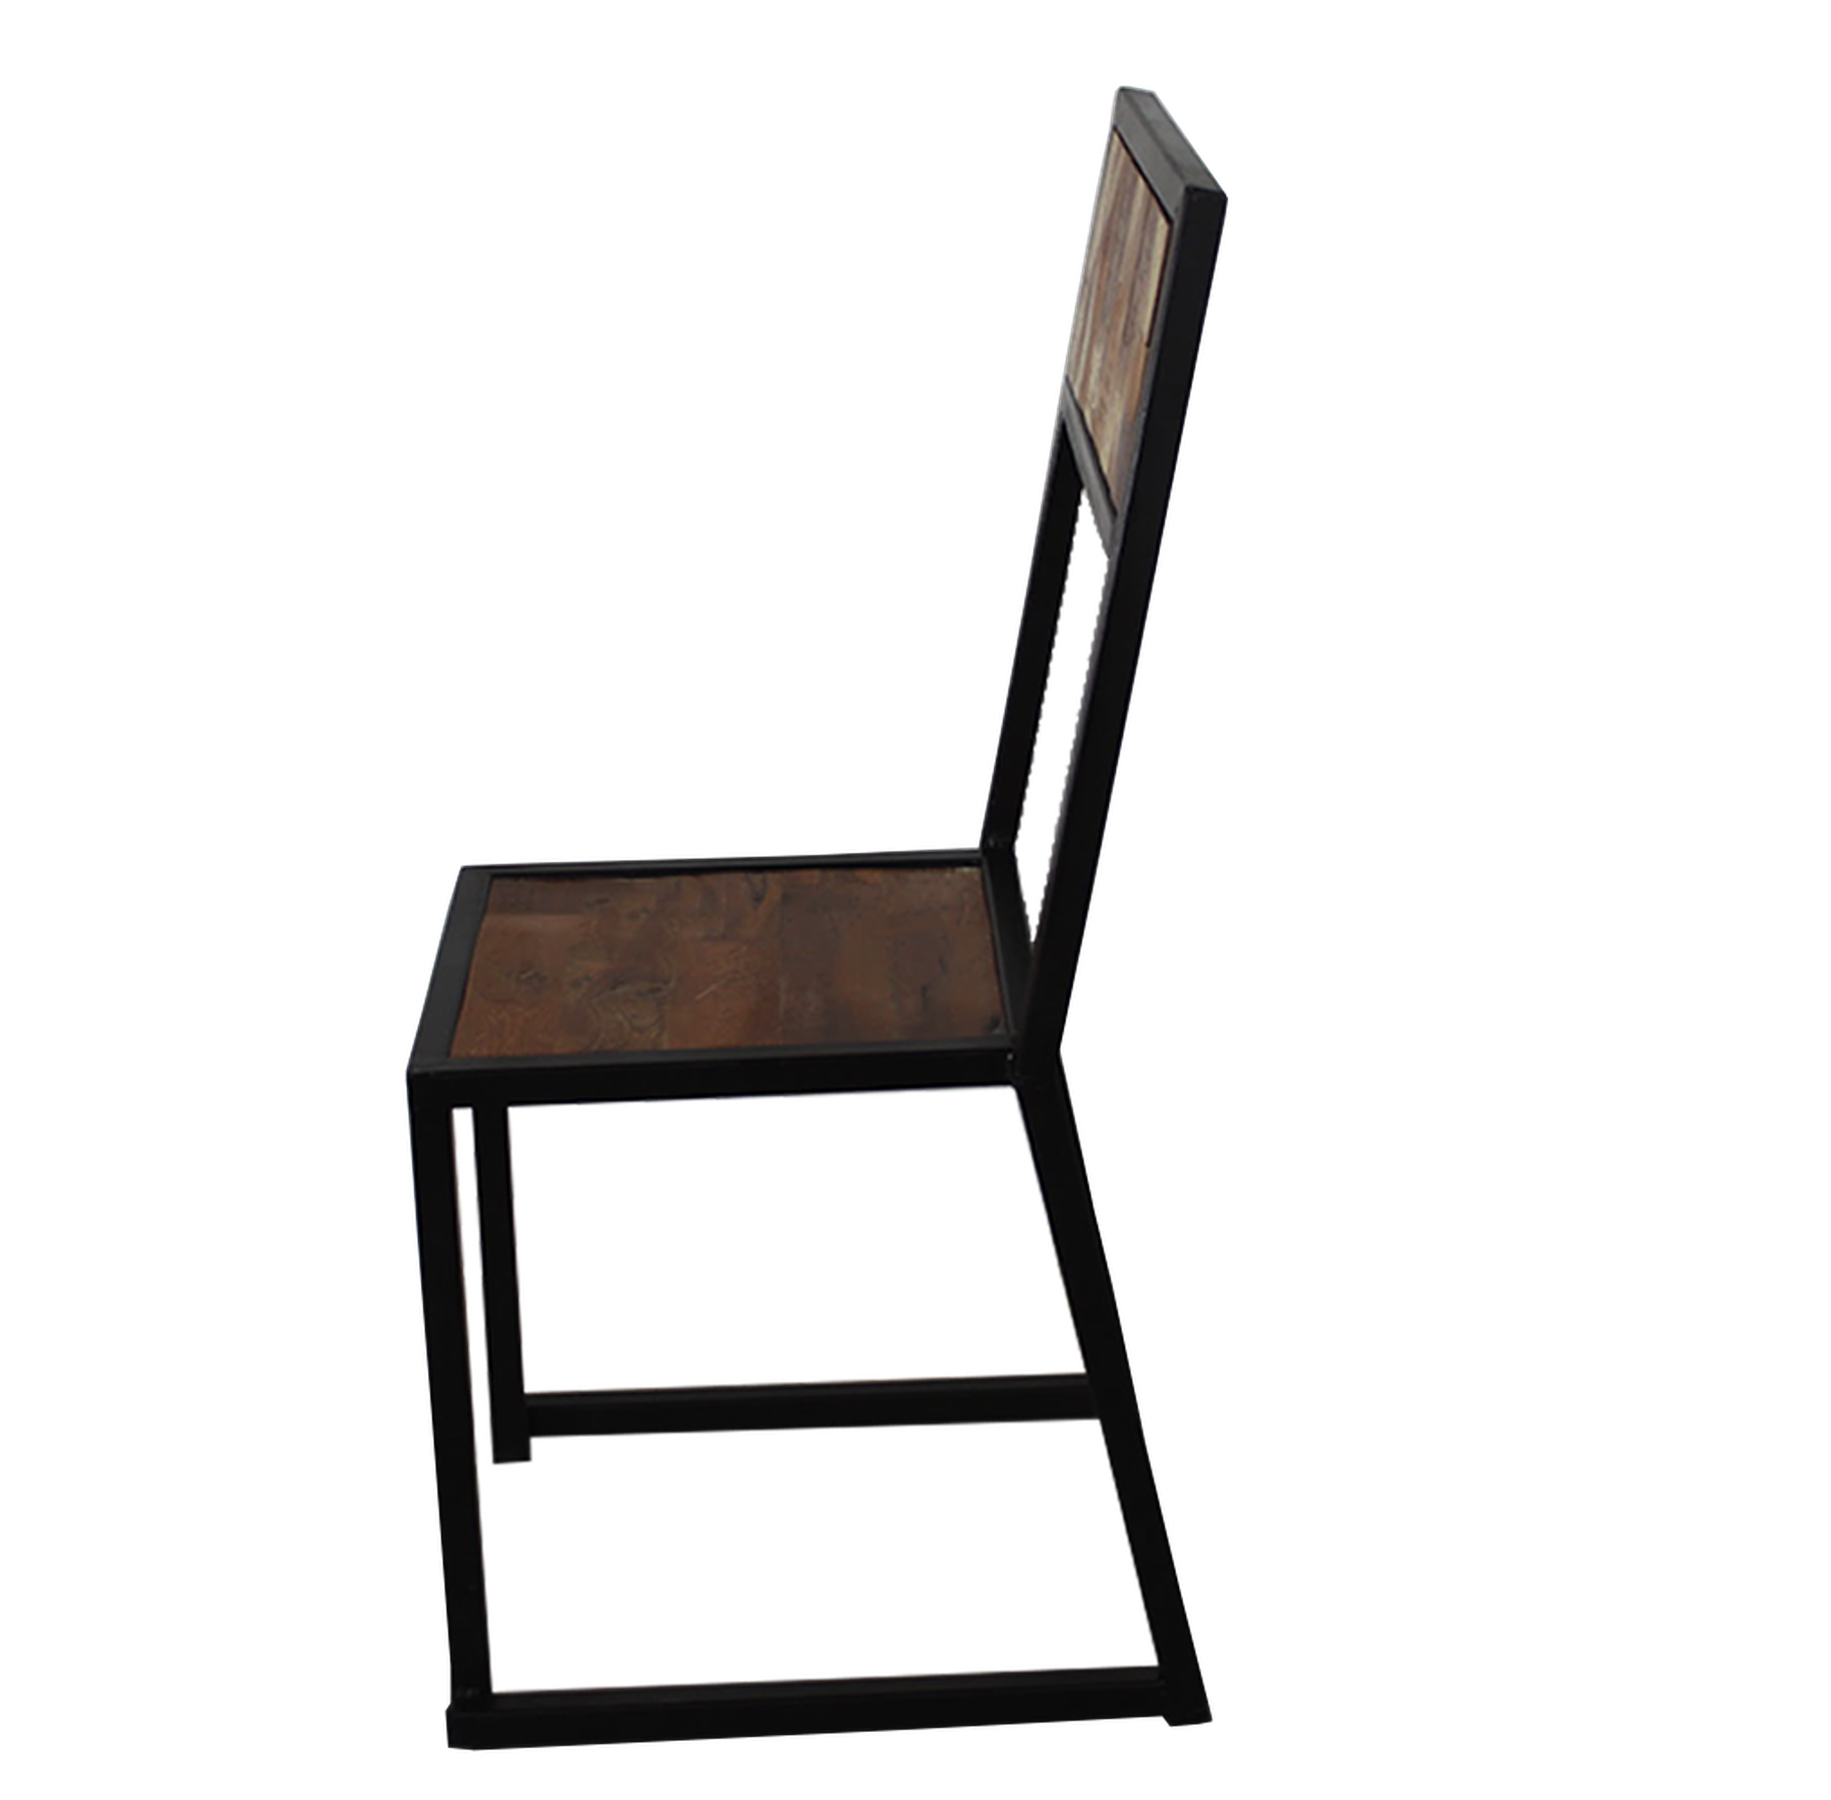 Chaise de salle à manger rustique (ensemble de 2) | Chaises Industrielles Modernes| Chaises pour cuisine et salle à manger